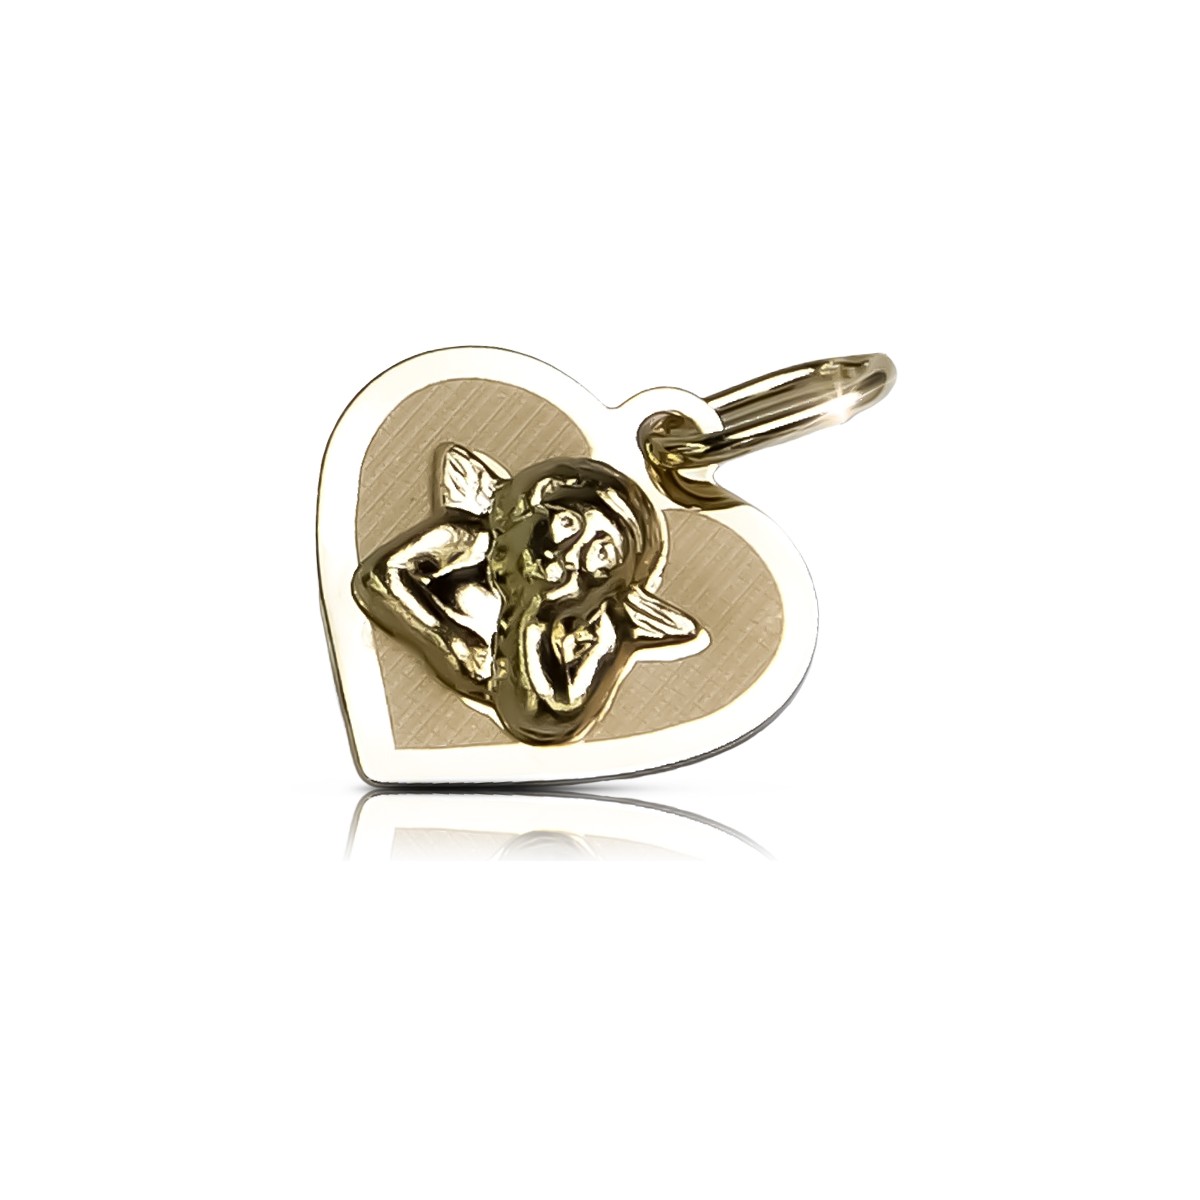 Colgante ★ Angel medallón icono zlotychlopak.pl ★ Oro 585 333 precio bajo